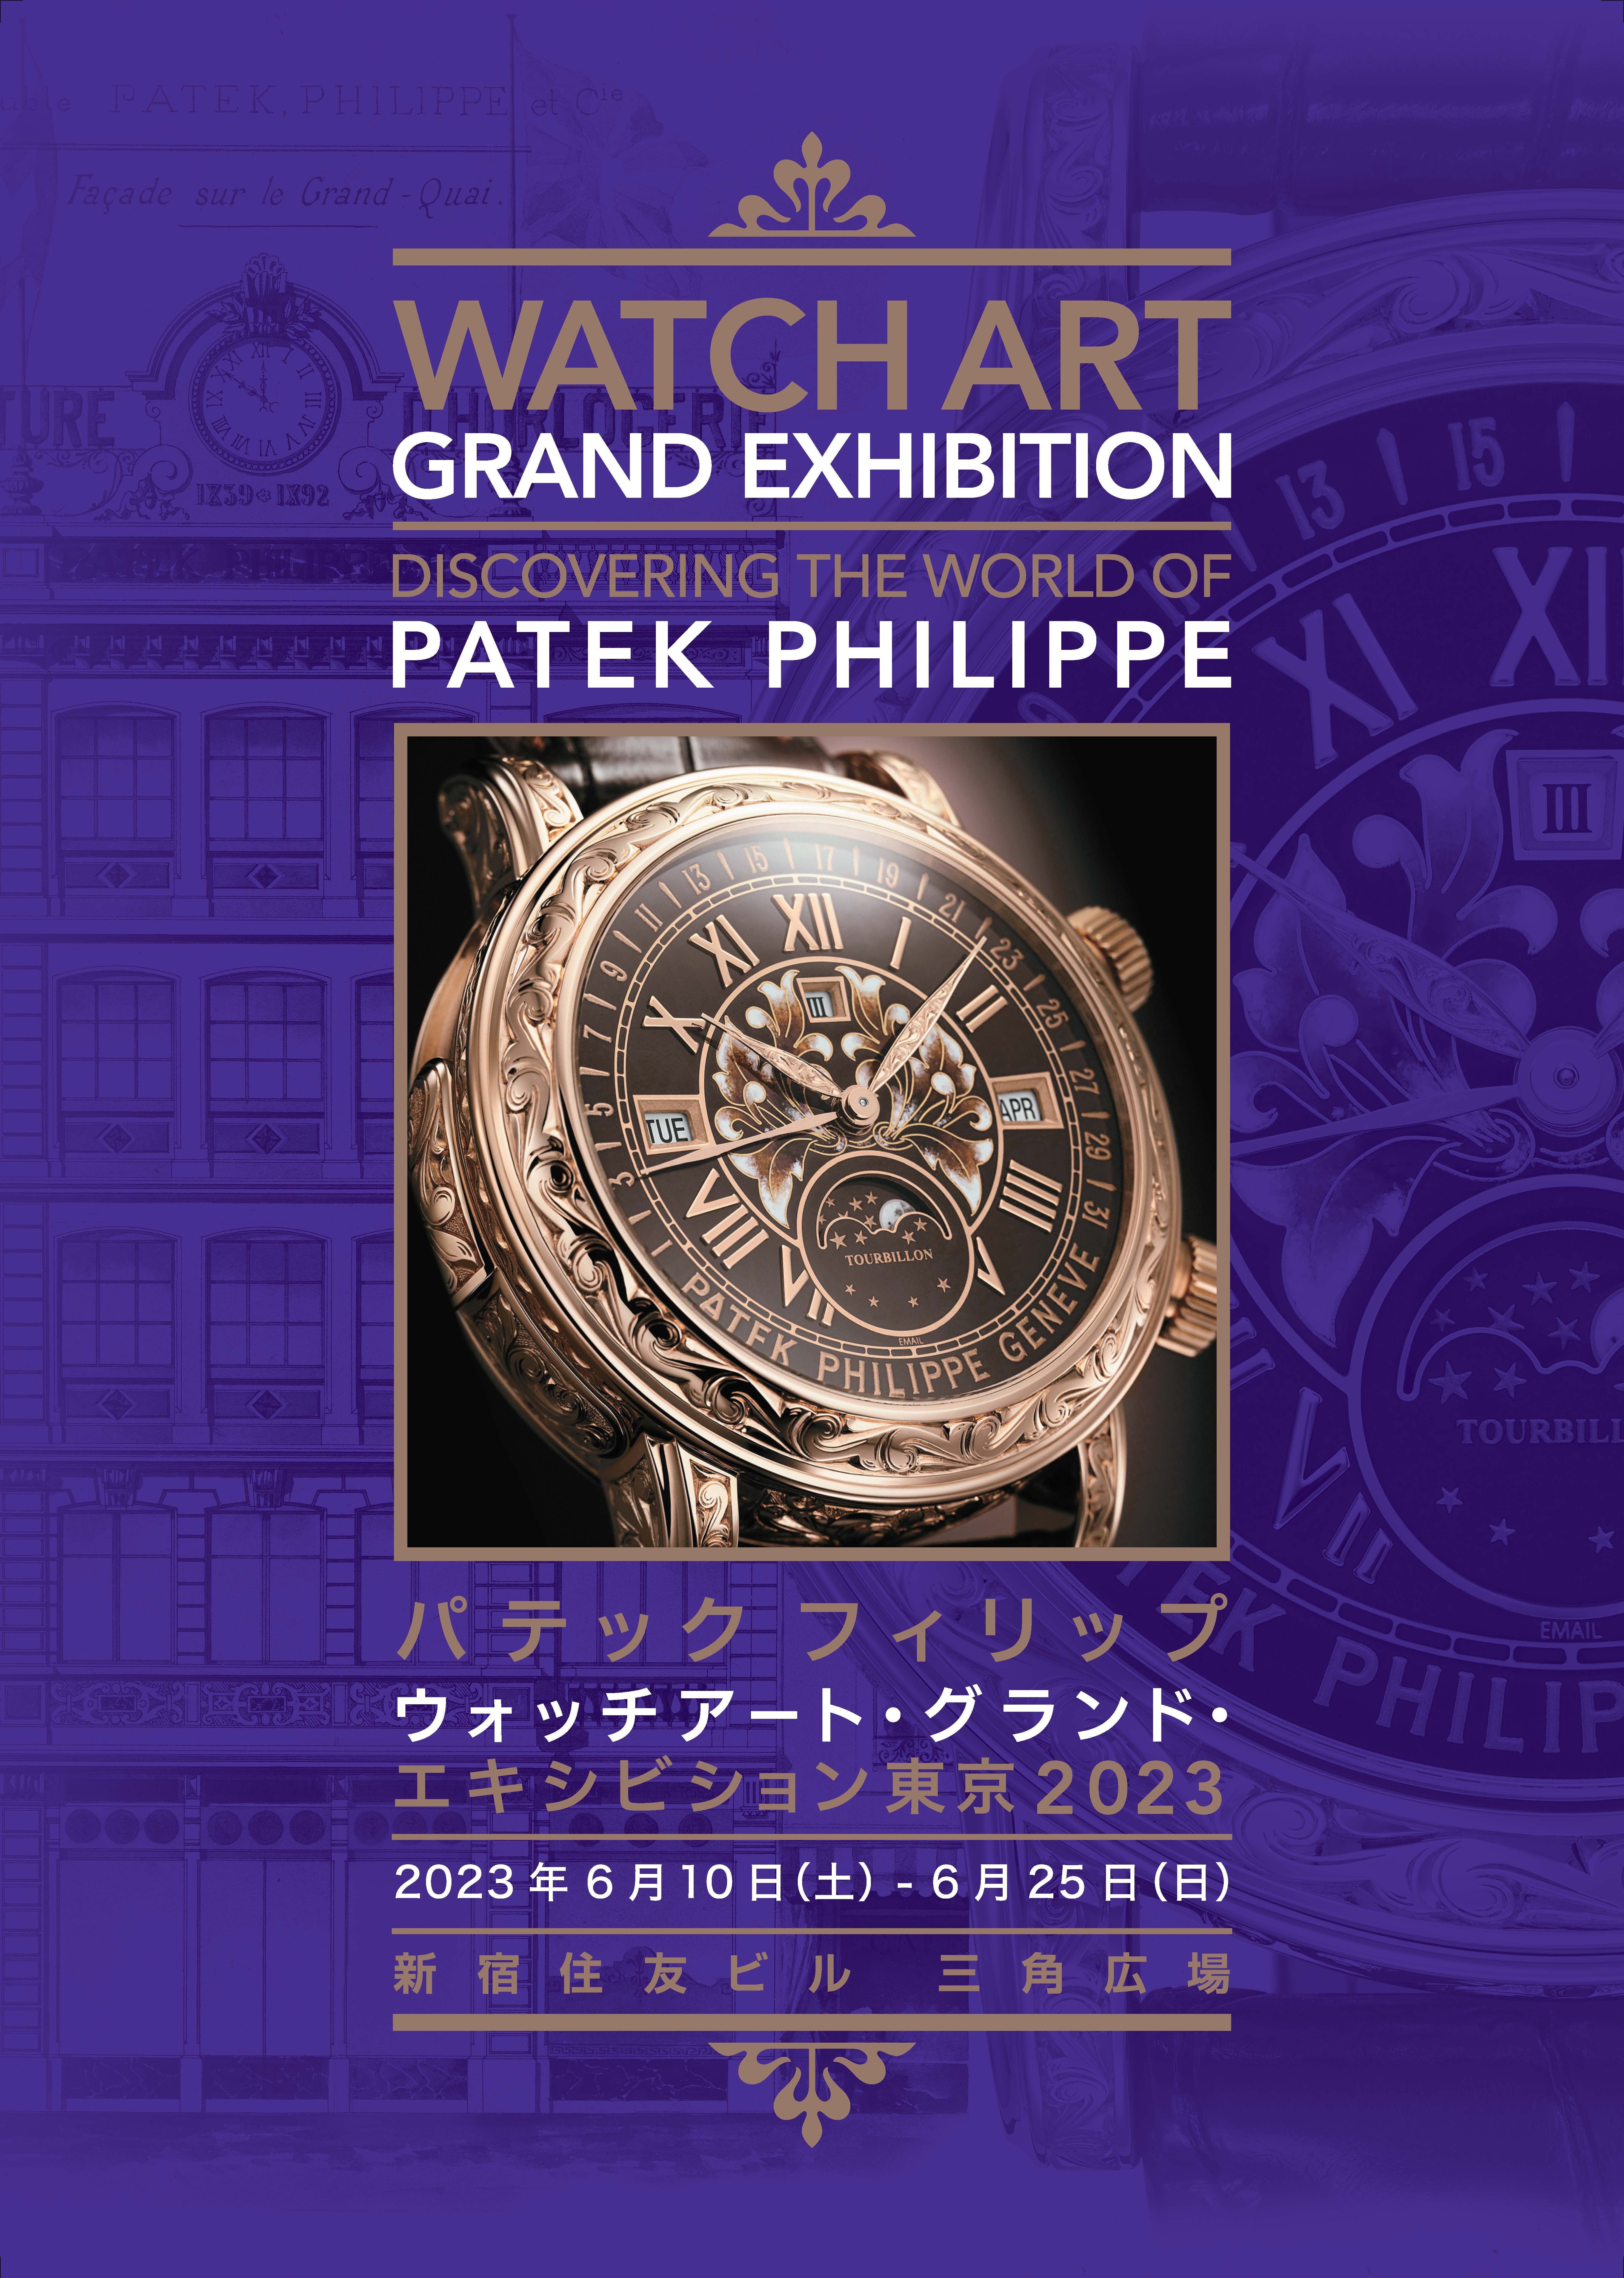 パテック フィリップの至高のアートピースによる「時計の祭典」が開催！